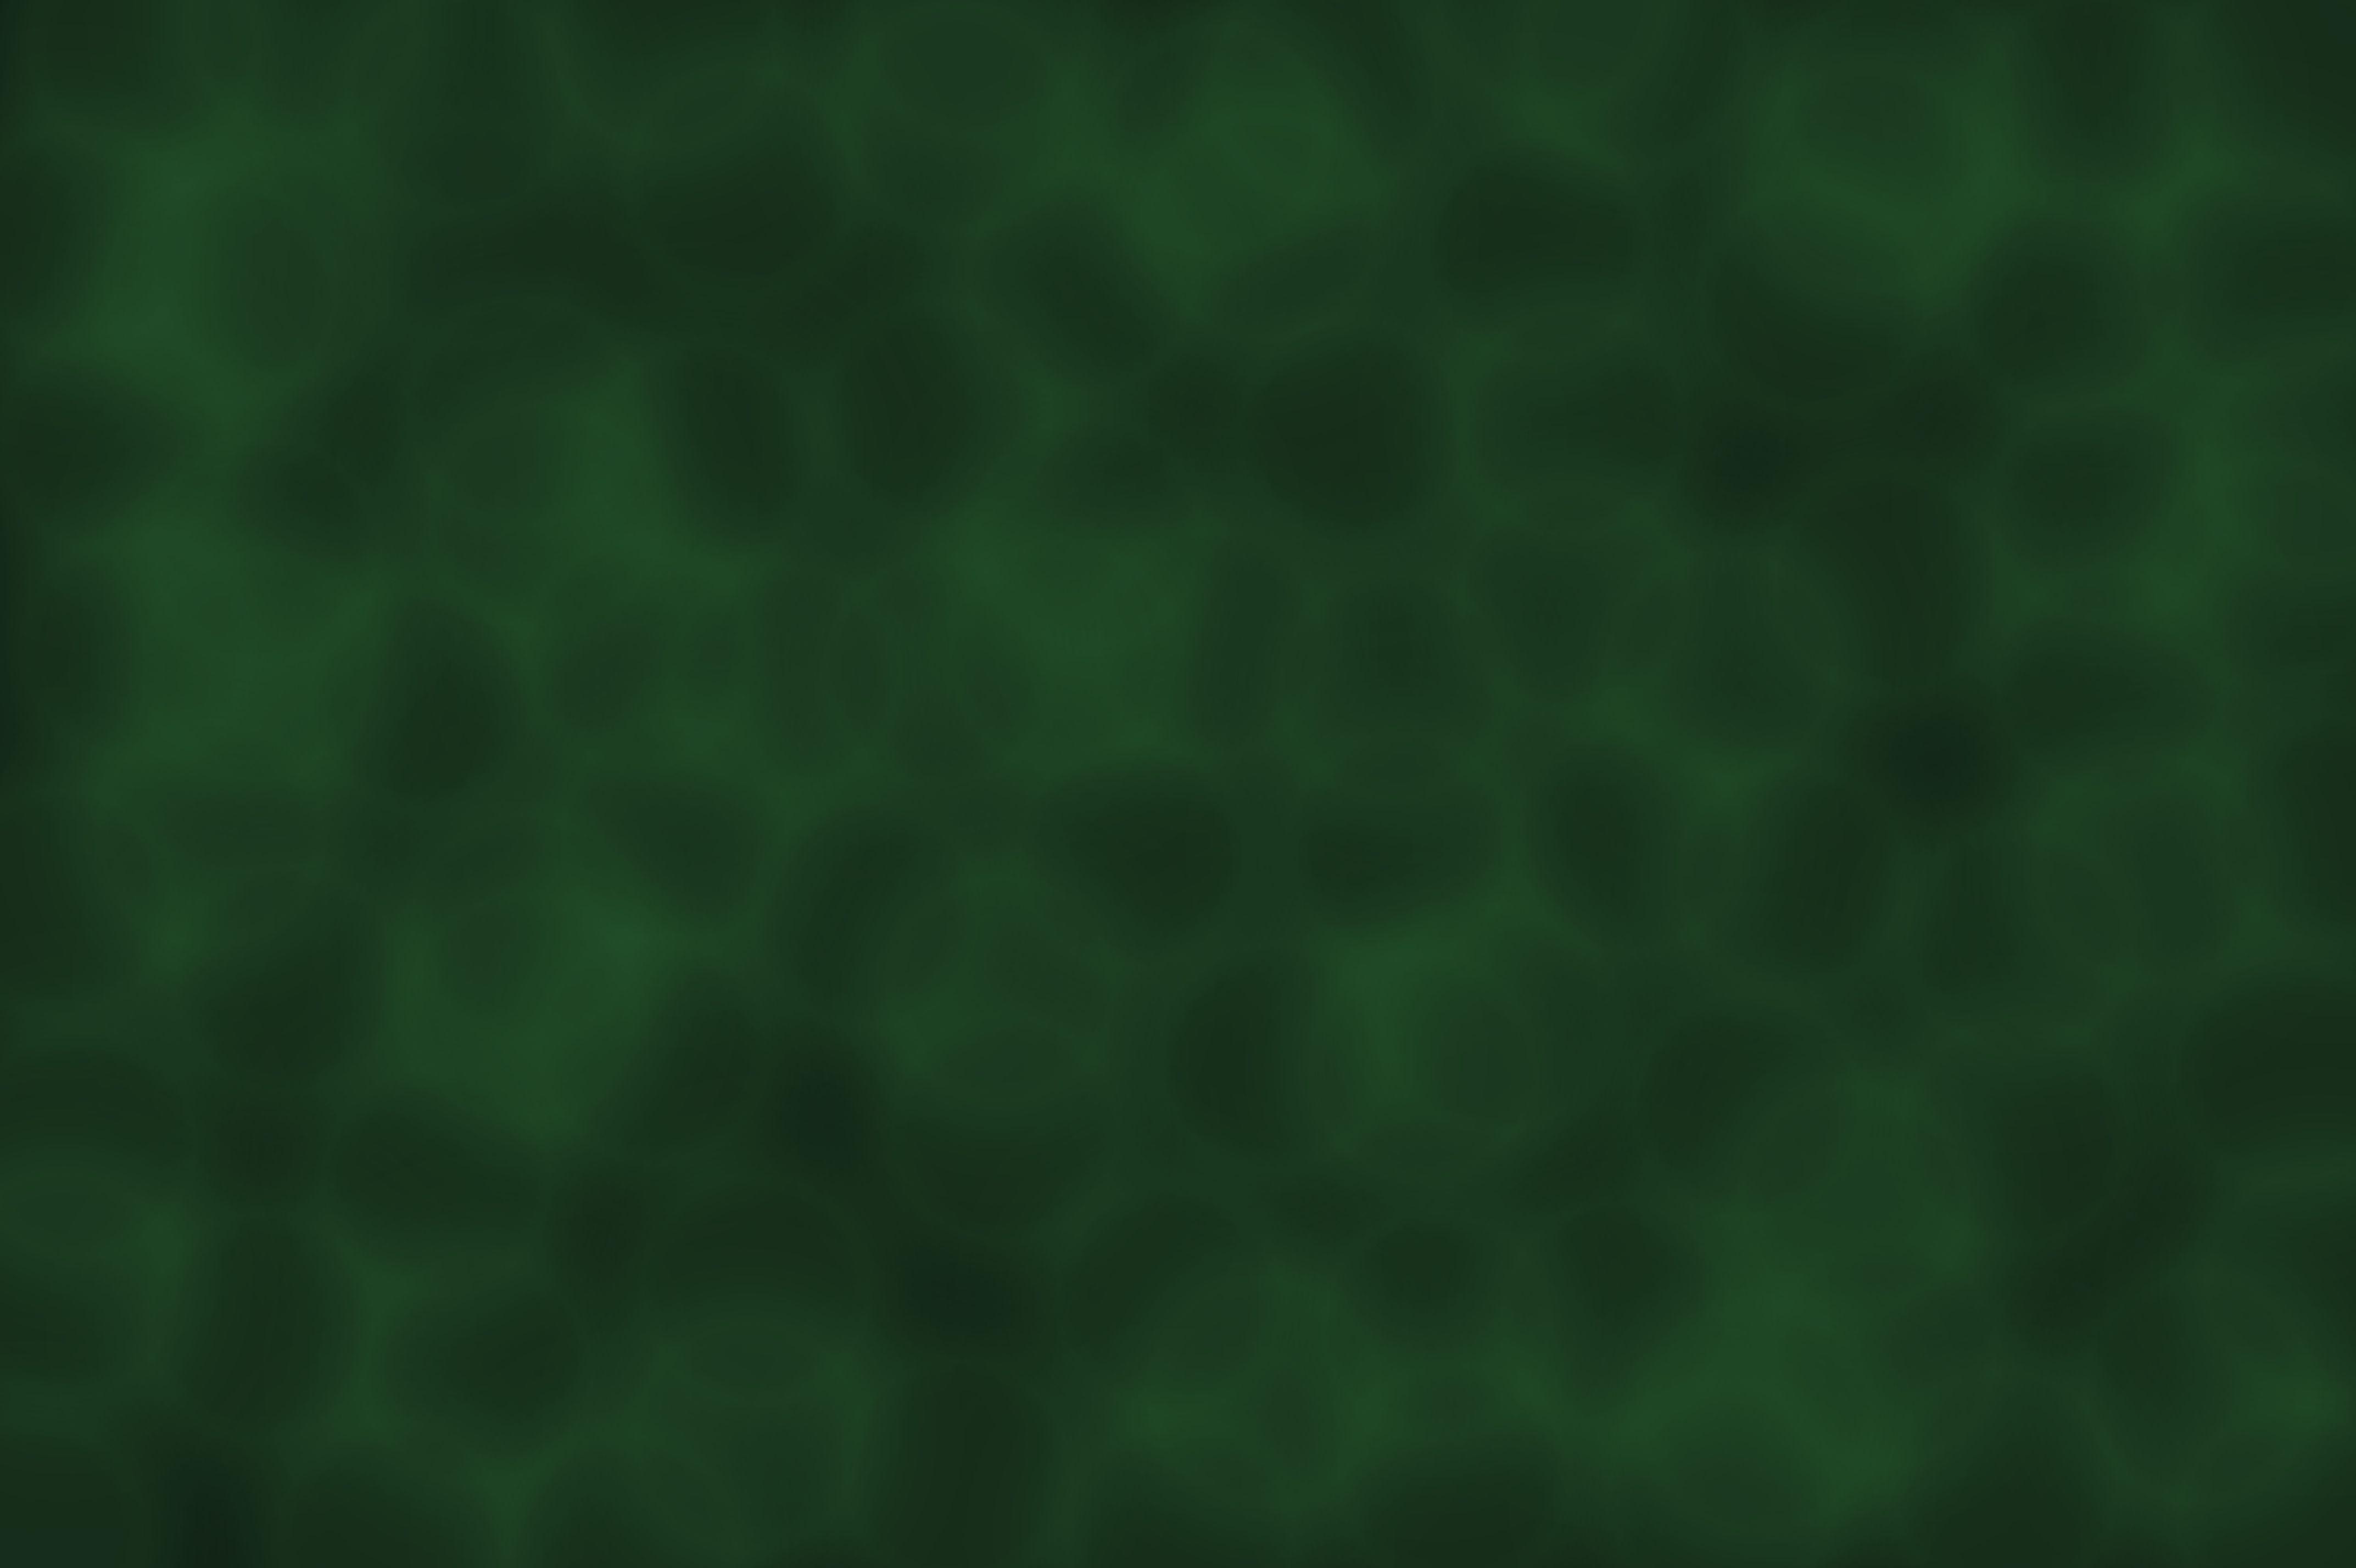 4290 x 2856 · jpeg - Dark Green Backgrounds - Wallpaper Cave